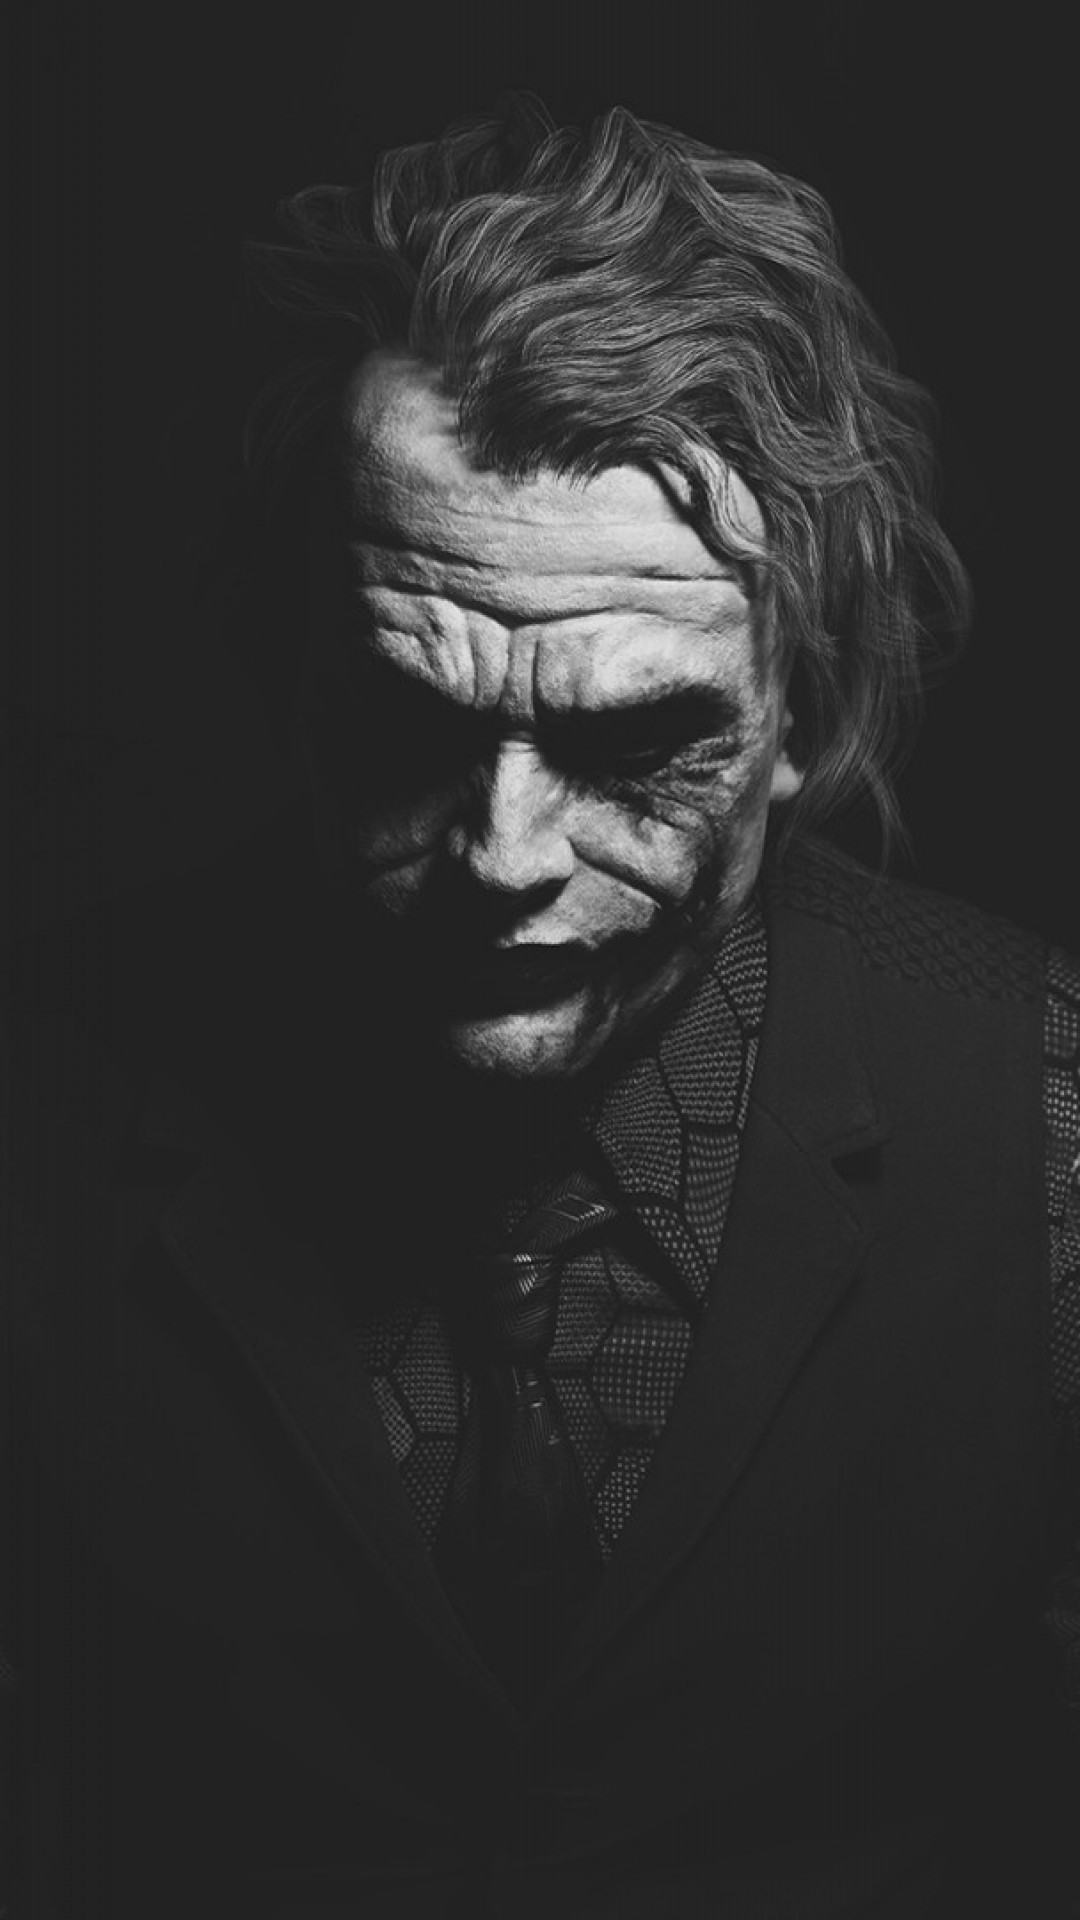 Heath Ledger, Joker, Monochrome, Batman - Joker Wallpaper Hd - HD Wallpaper 